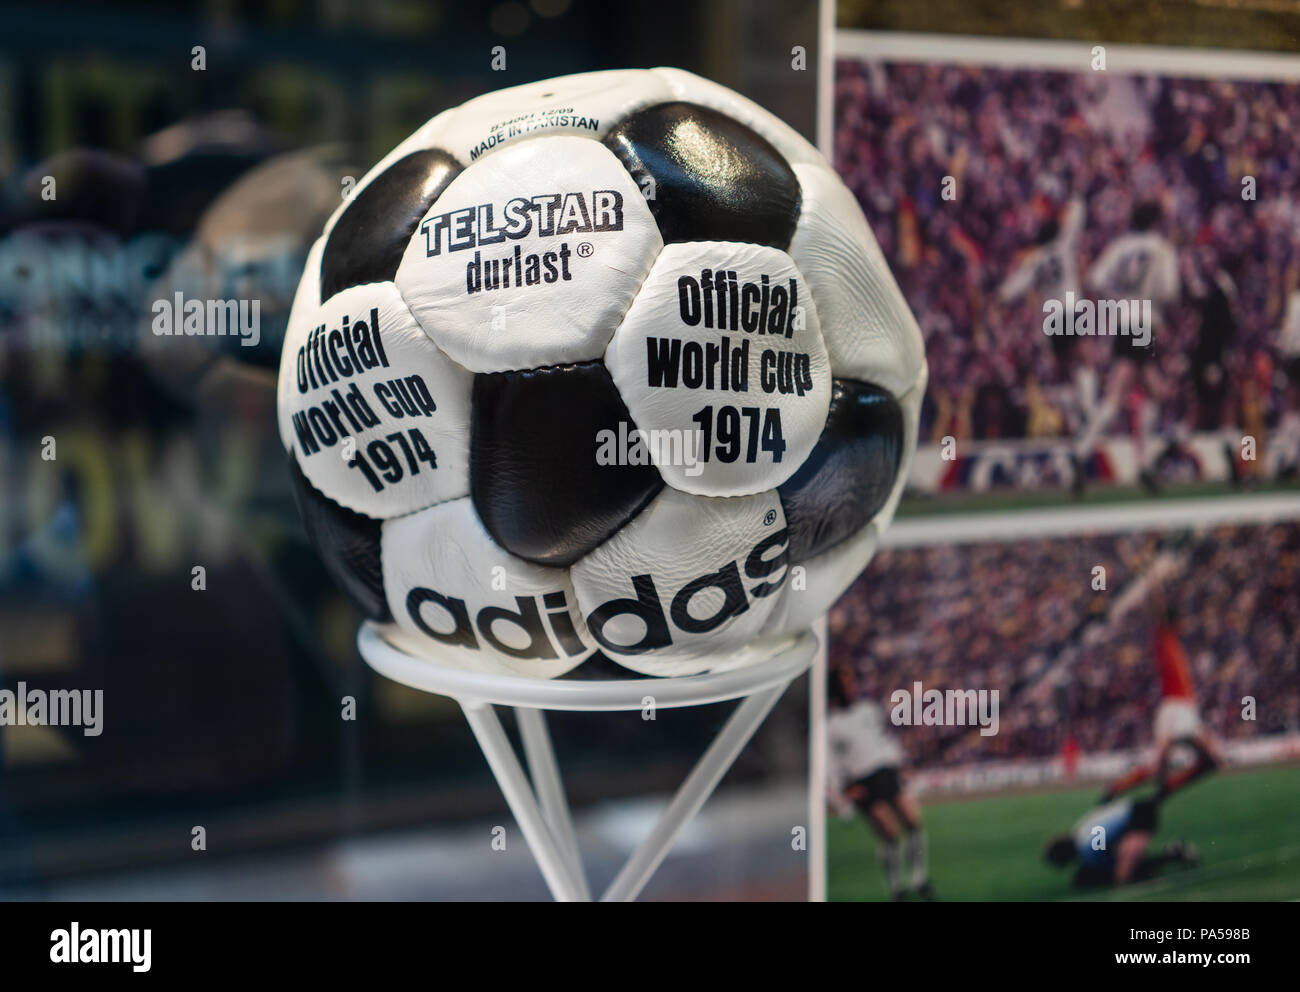 Juli 7, 2018, Moskau, Russland offiziellen Spielball der FIFA Fußball-Weltmeisterschaft 1974 in Deutschland Adidas Telstar durlast. Stockfoto